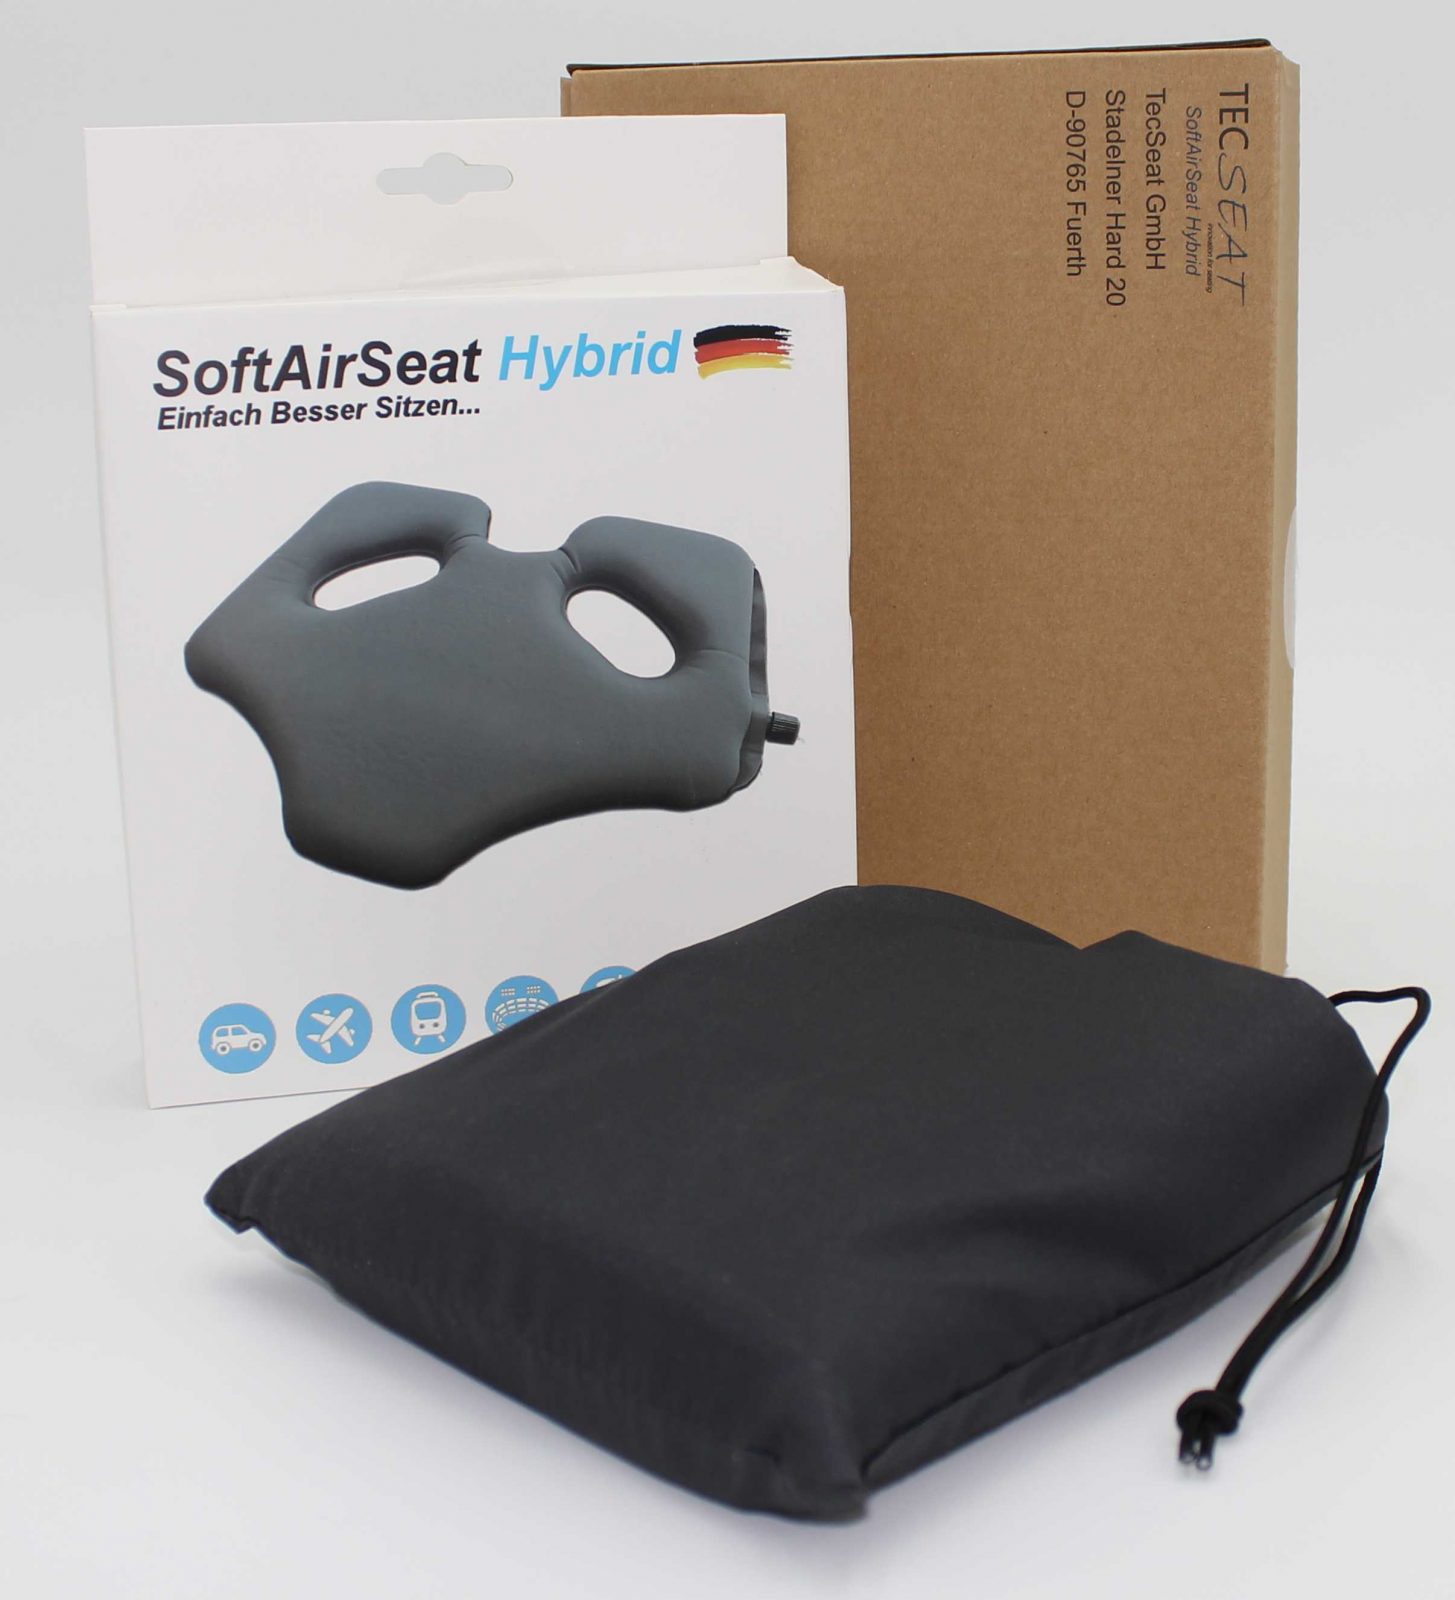 SoftAirSeat Hybrid - Ohne Schmerzen und gesund sitzen